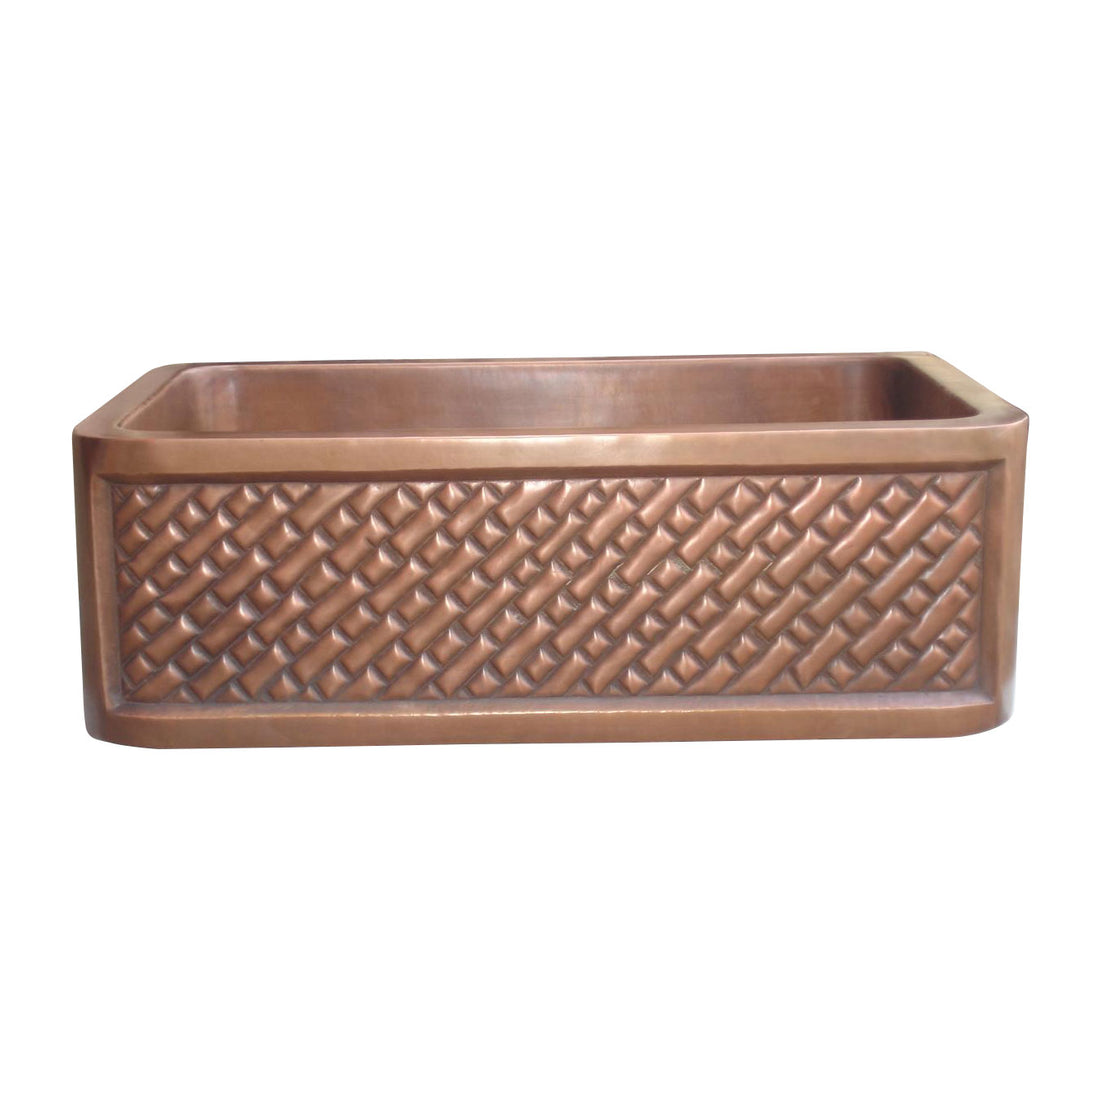 Single Bowl Diagonal Brick Front Apron Copper Kitchen Sink